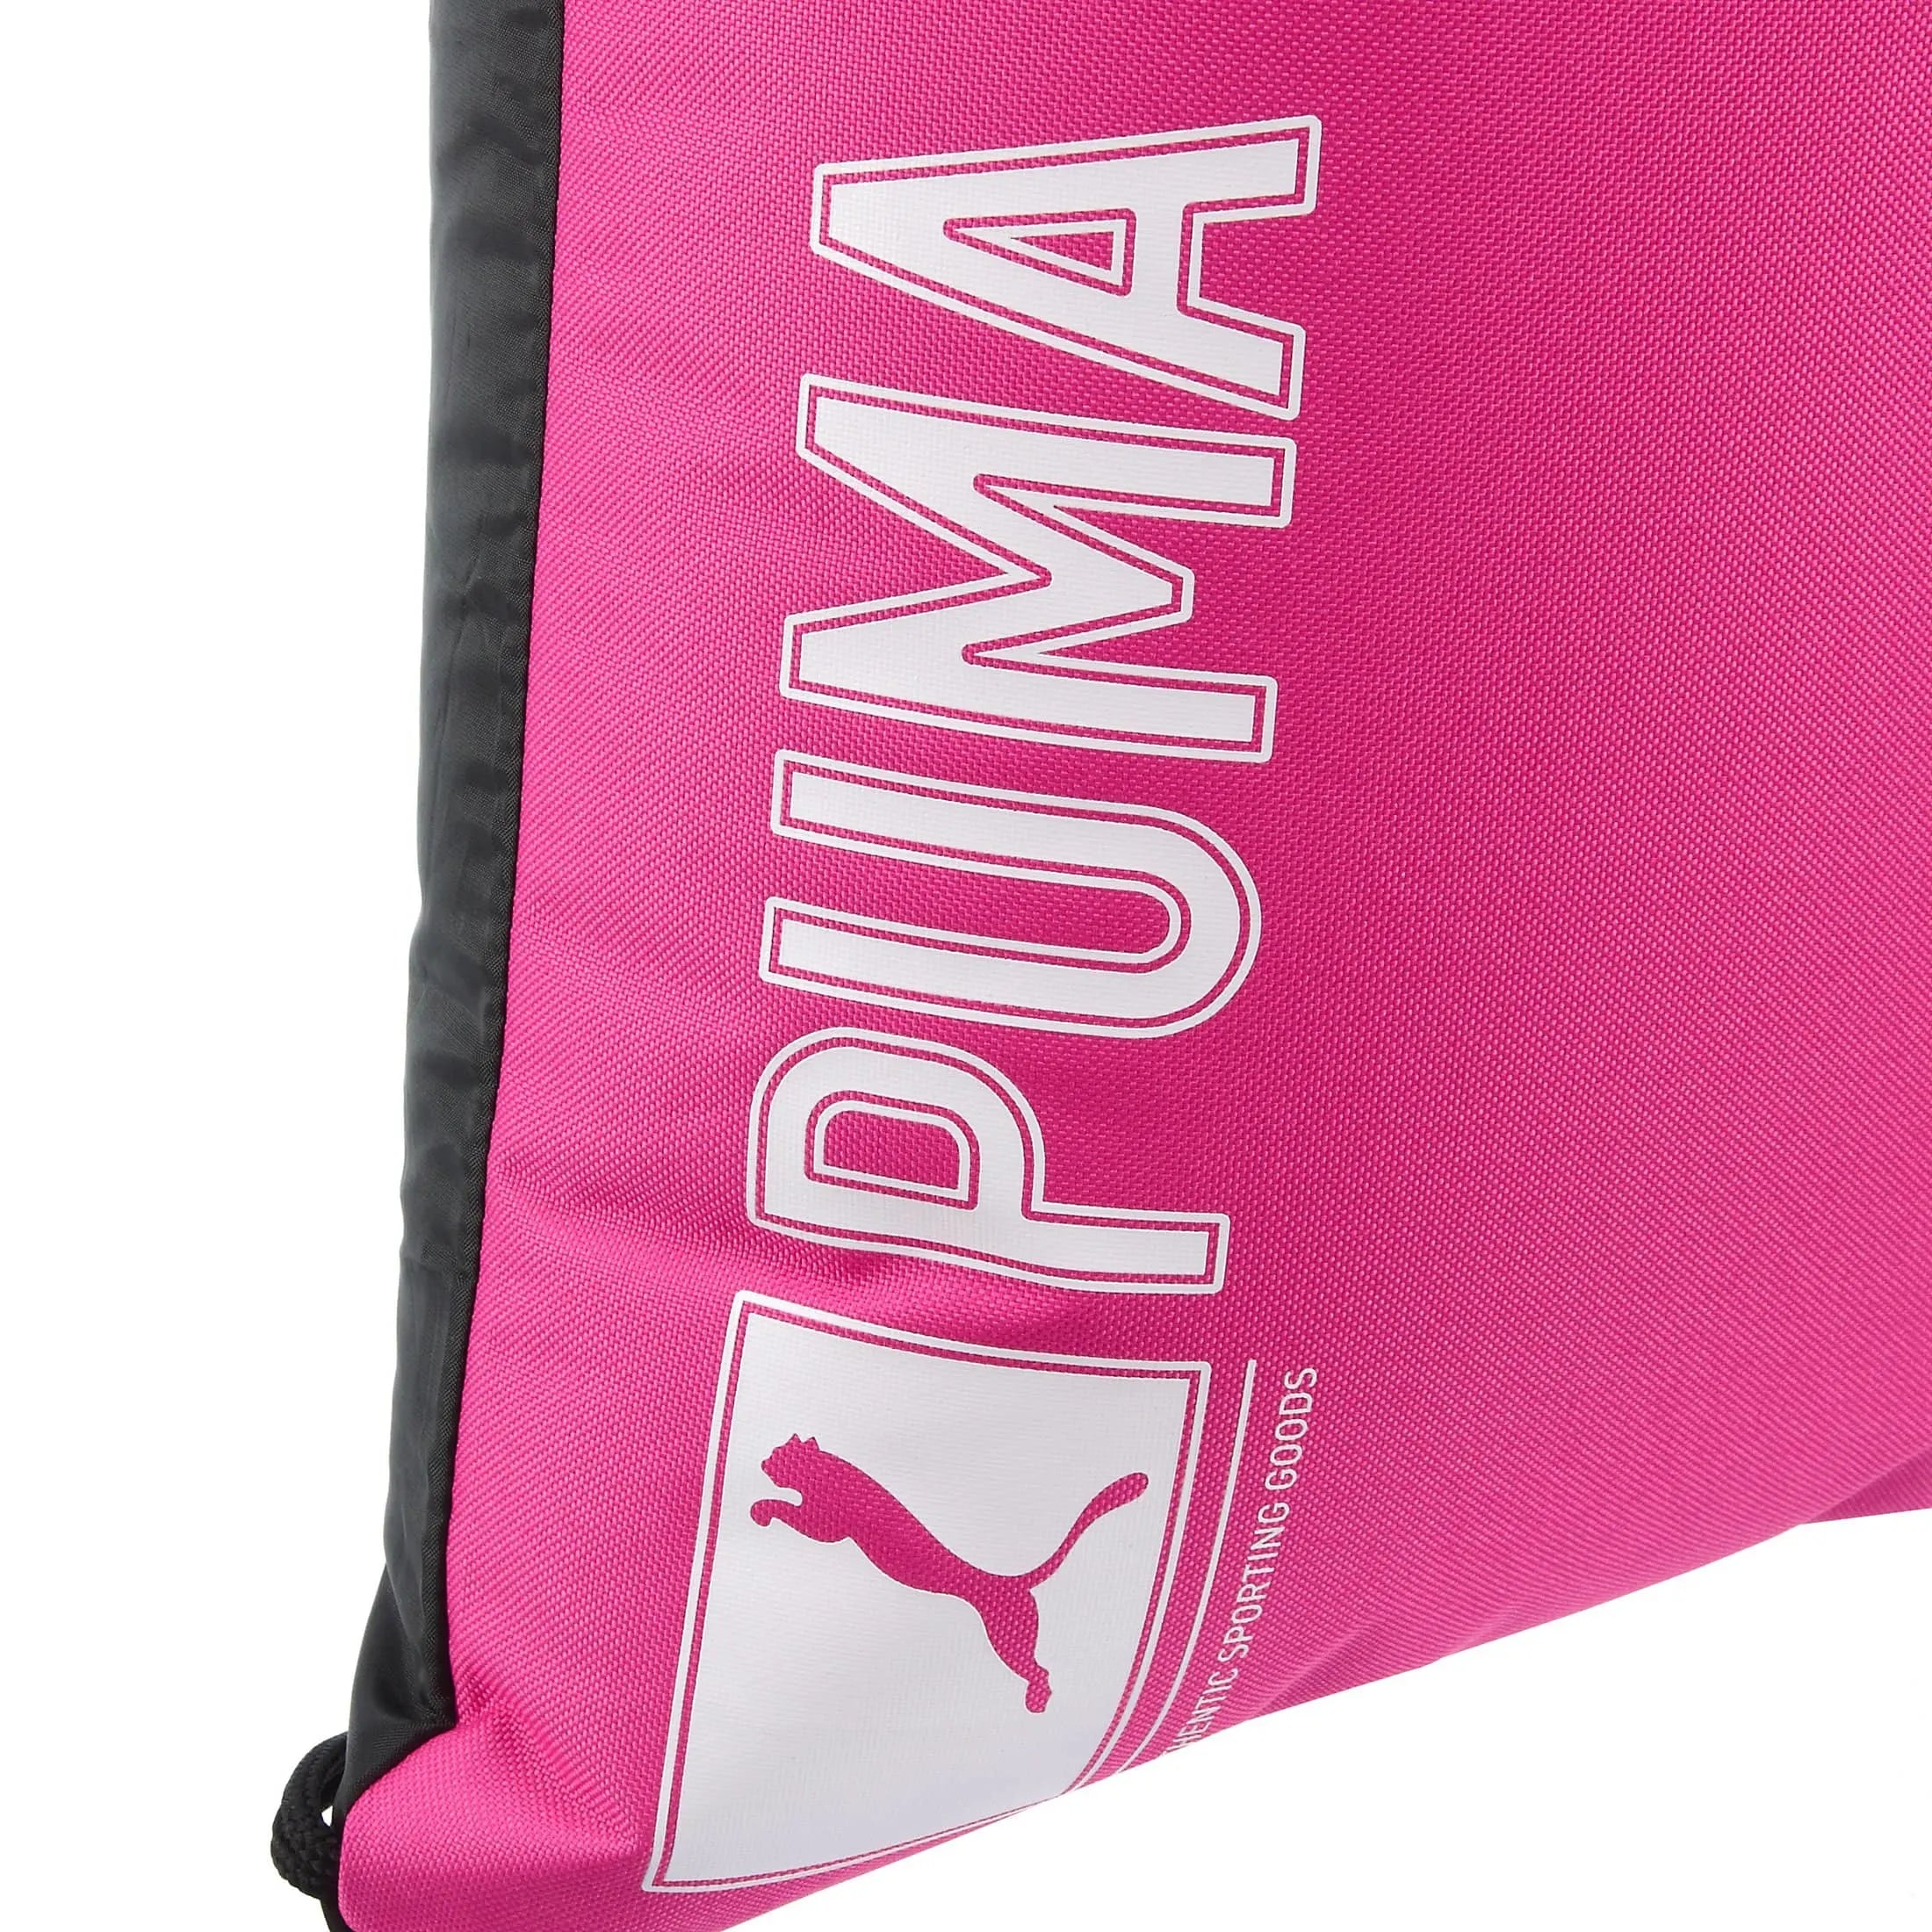 Puma Pioneer Gymnastic Sack sac de sport 47 cm - rose violet